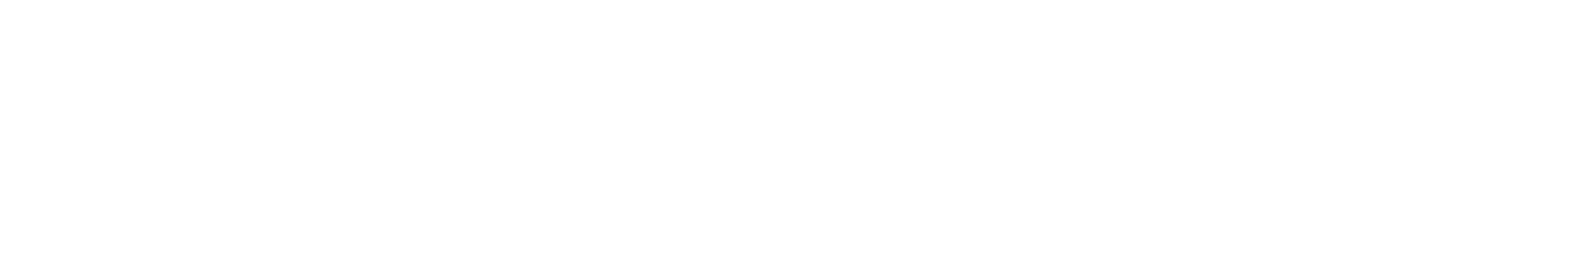 Kraft Heinz Logo groß für dunkle Hintergründe (transparentes PNG)